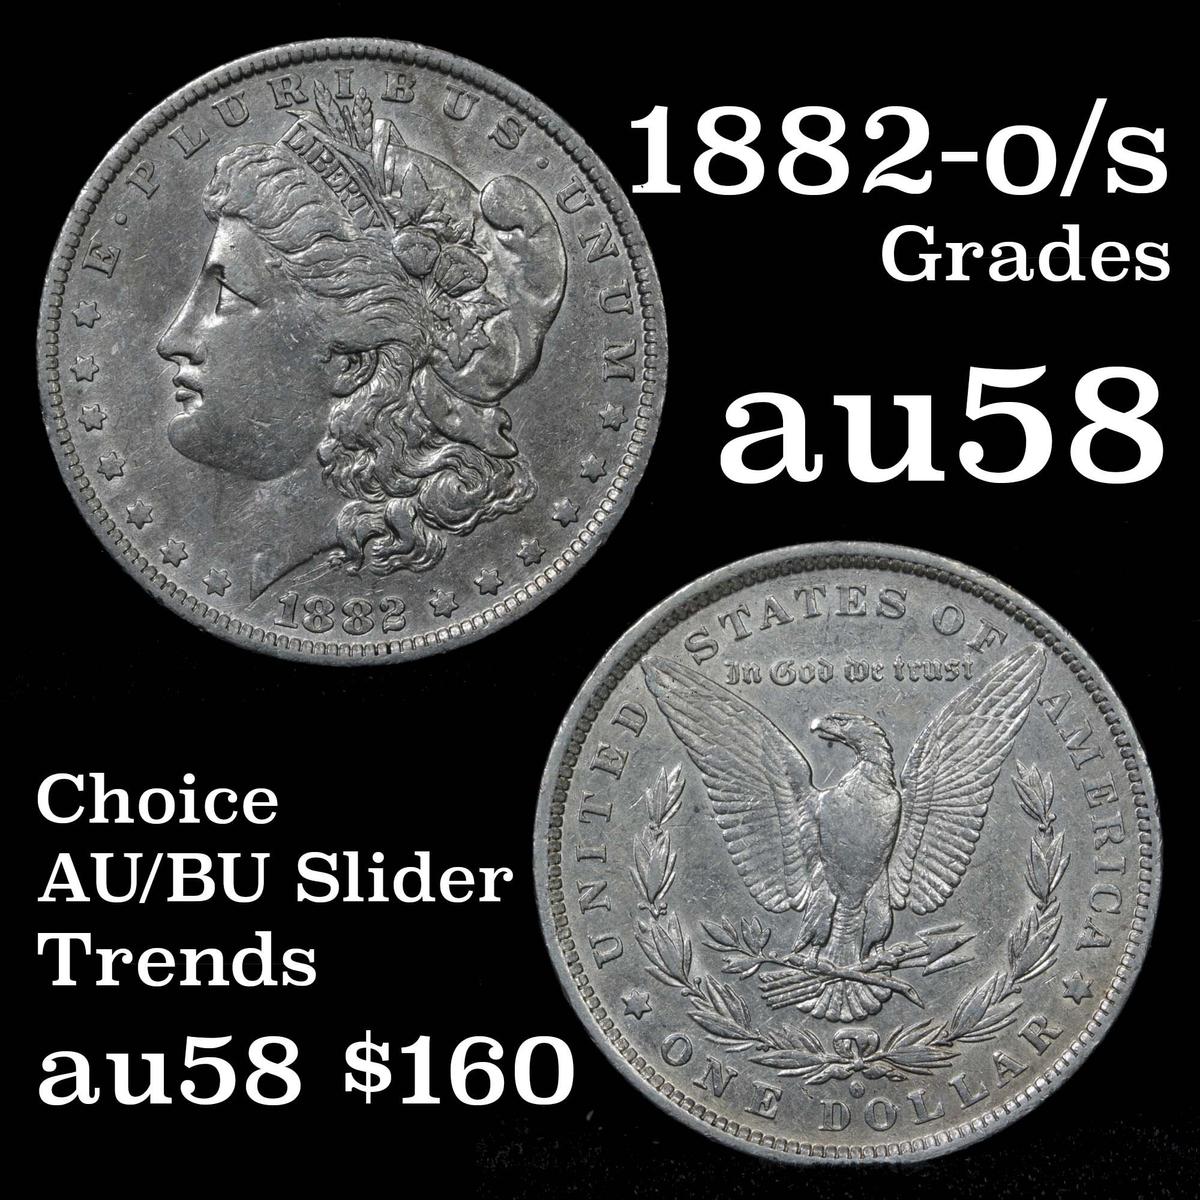 1882-o/s Morgan Dollar $1 Grades Choice AU/BU Slider